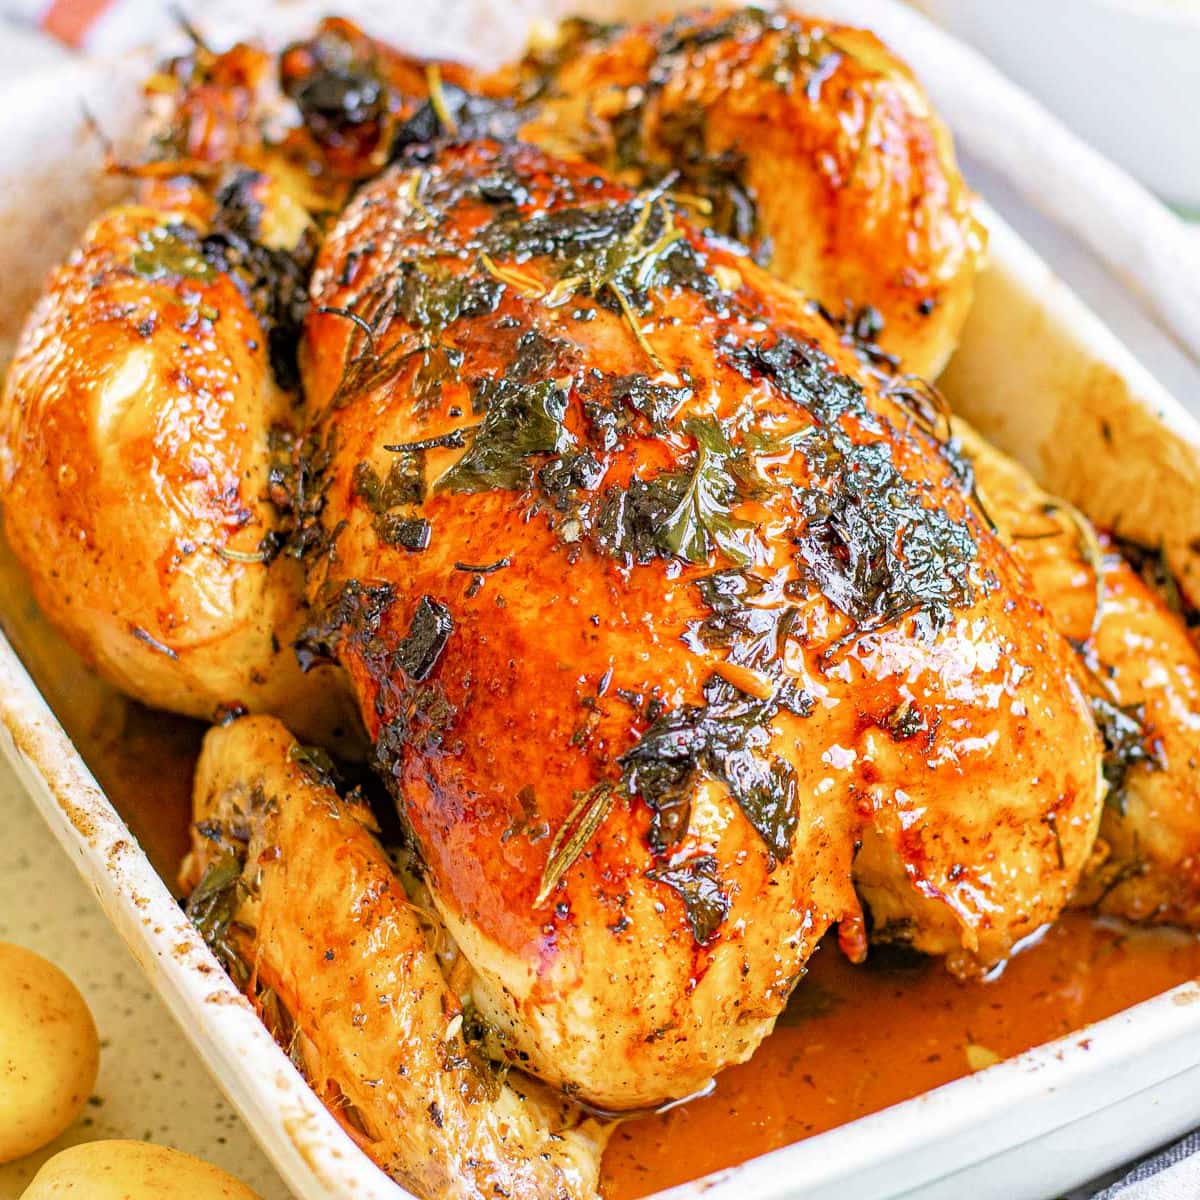 Resep Masakan Olahan Ayam: Panduan Lengkap untuk Sajian Lezat